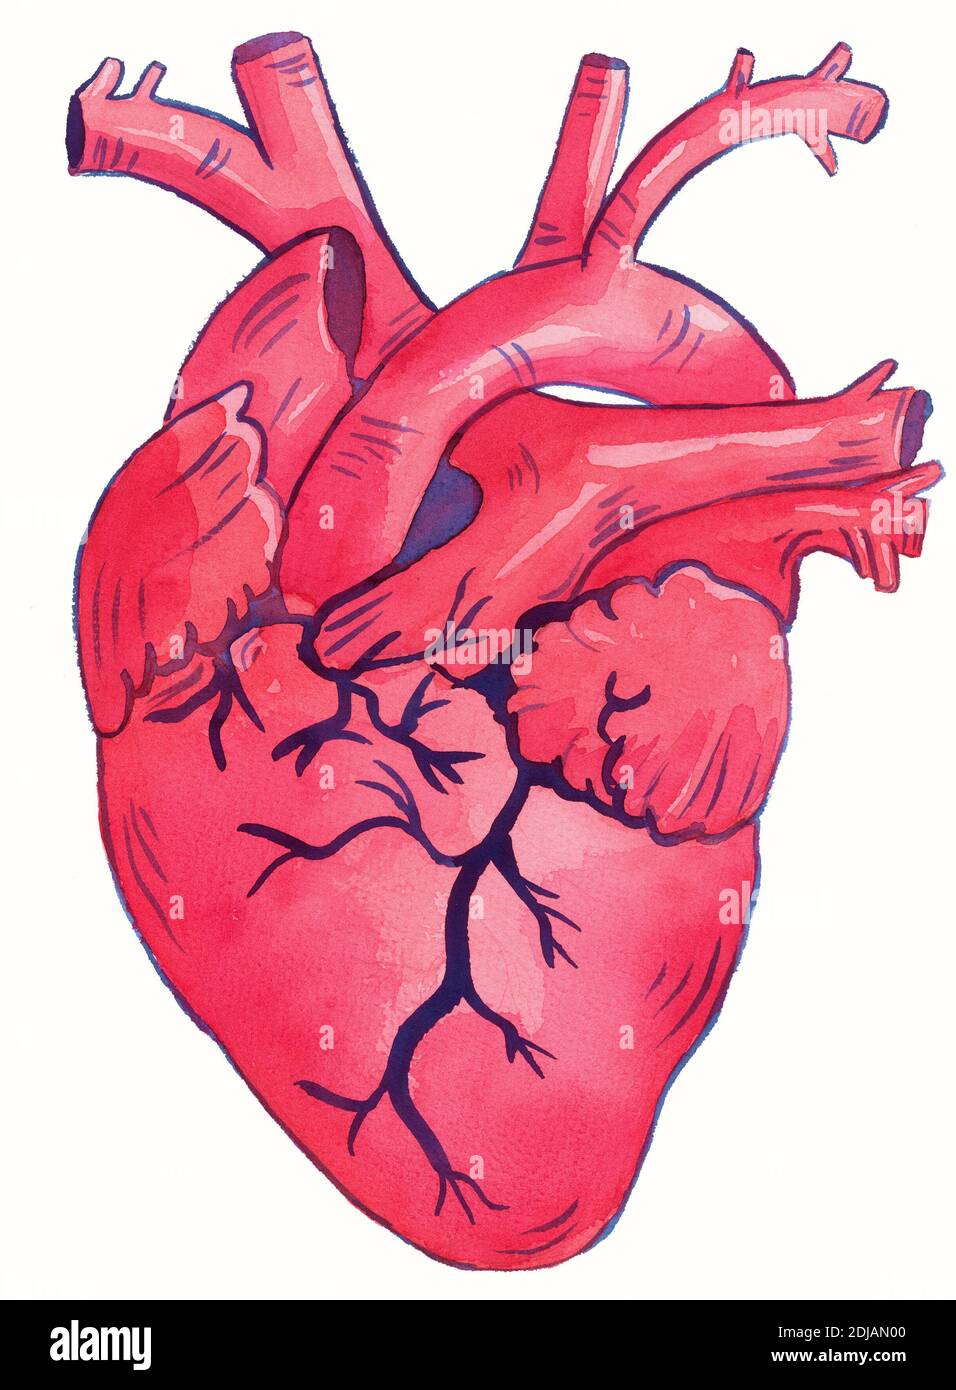 illustrazione dell'acquerello del cuore umano, cuore anatomico umano Foto  stock - Alamy